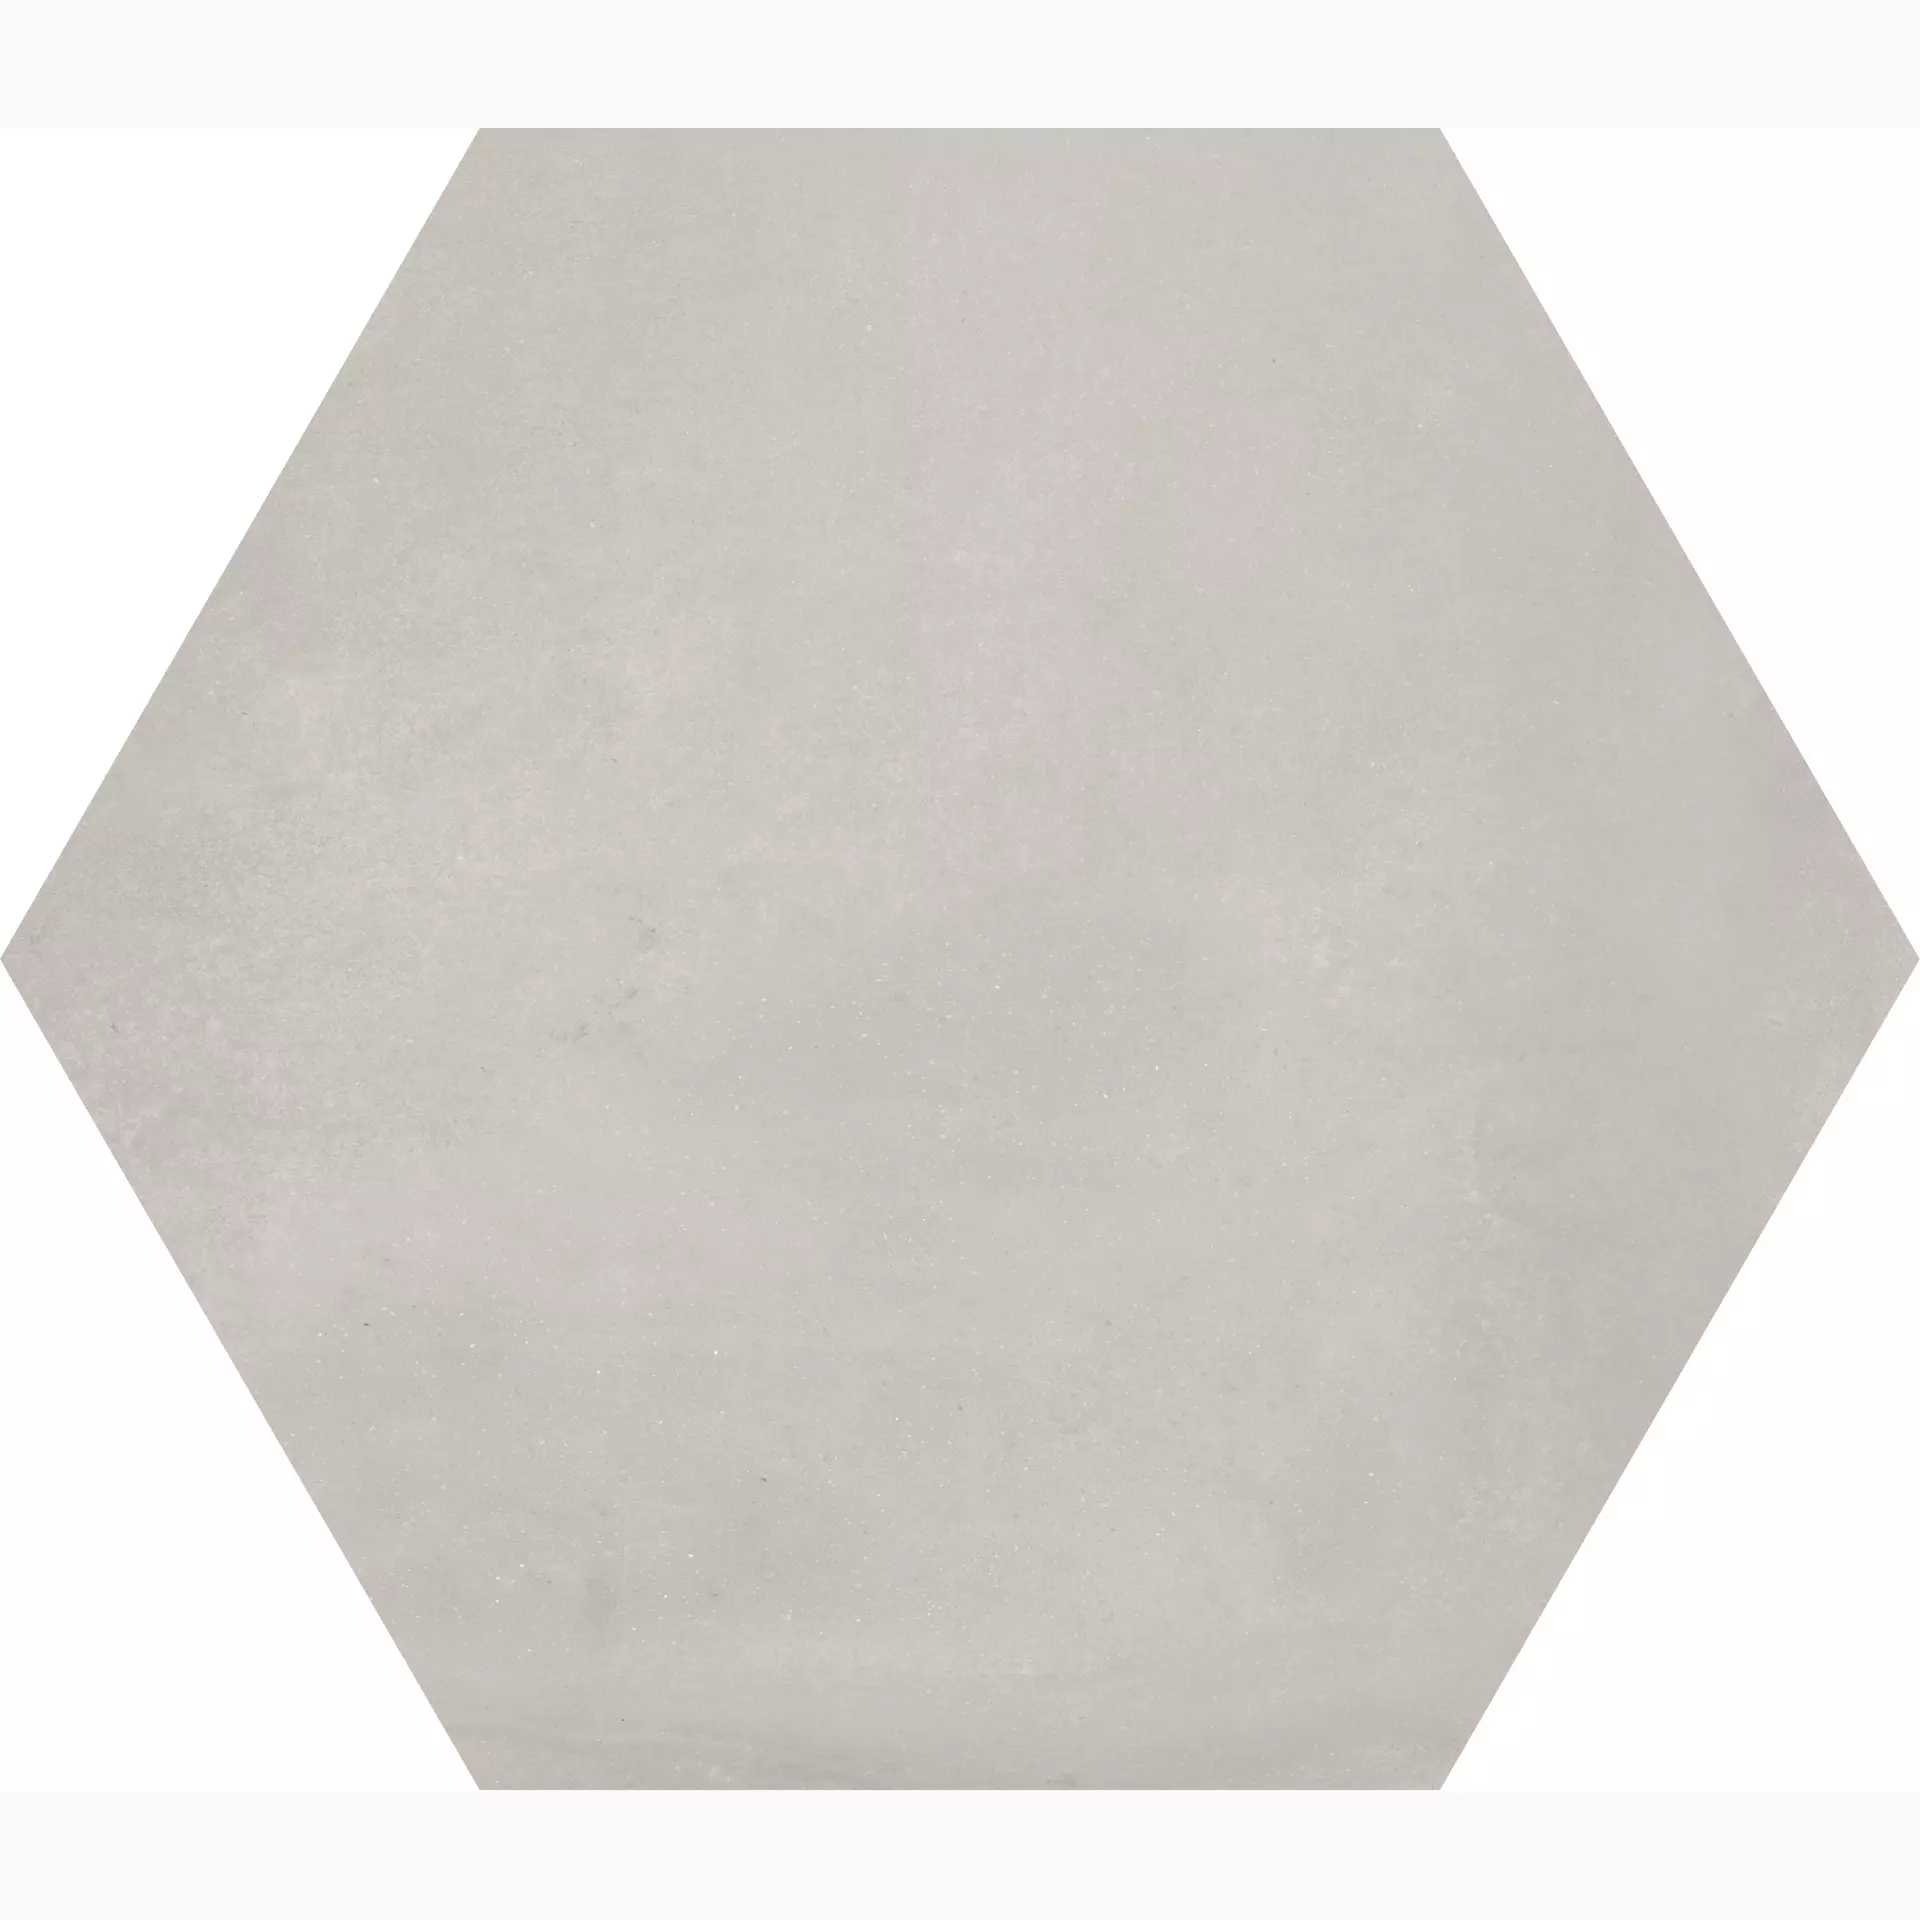 41zero42 Mate Grigio Naturale Hexagon 4100071 19,5x22,5cm rectified 9,5mm